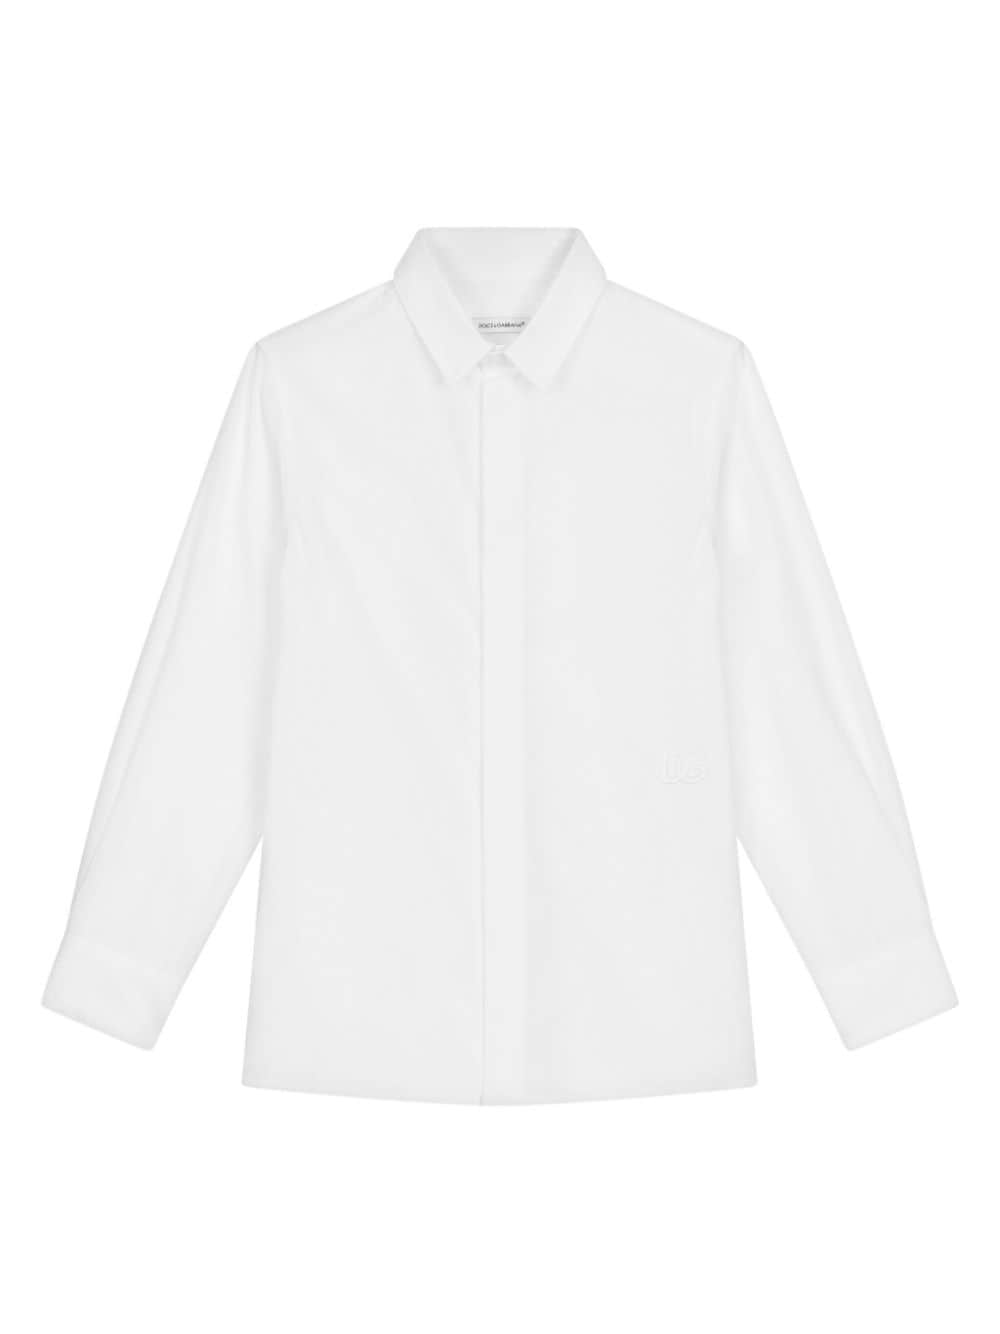 White shirt for children